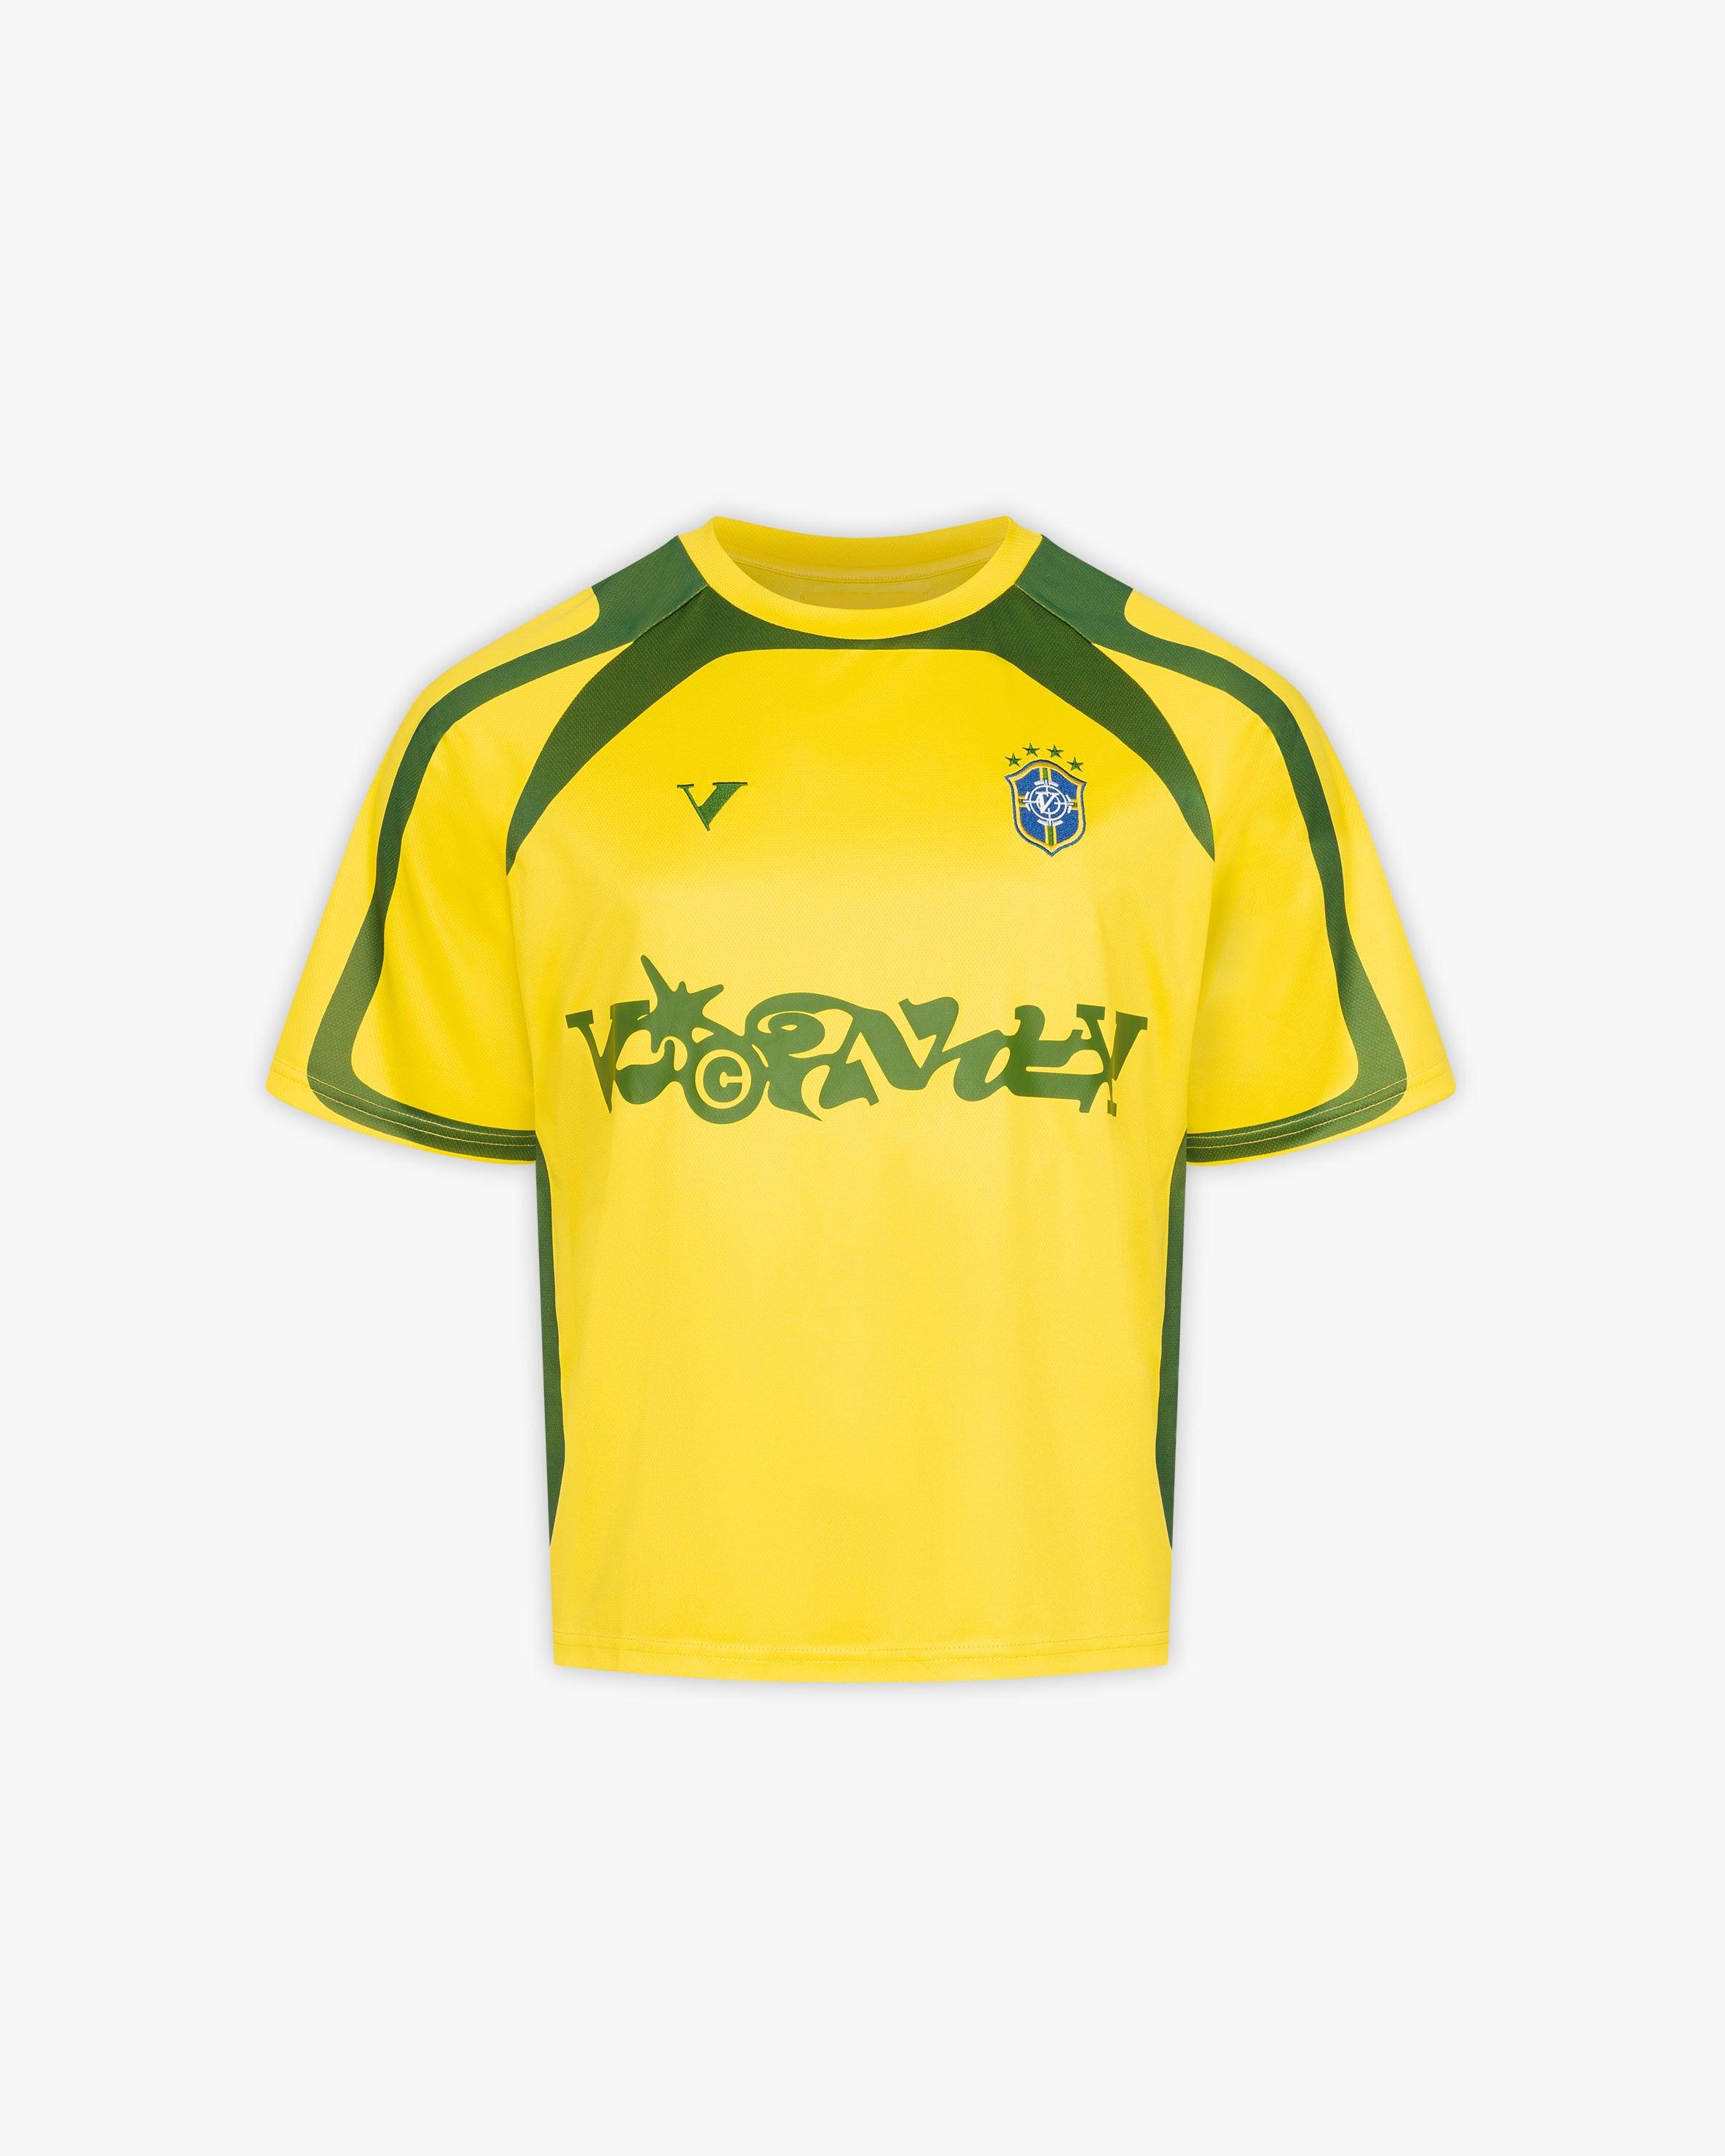 BRAZIL JERSEY – VICINITY